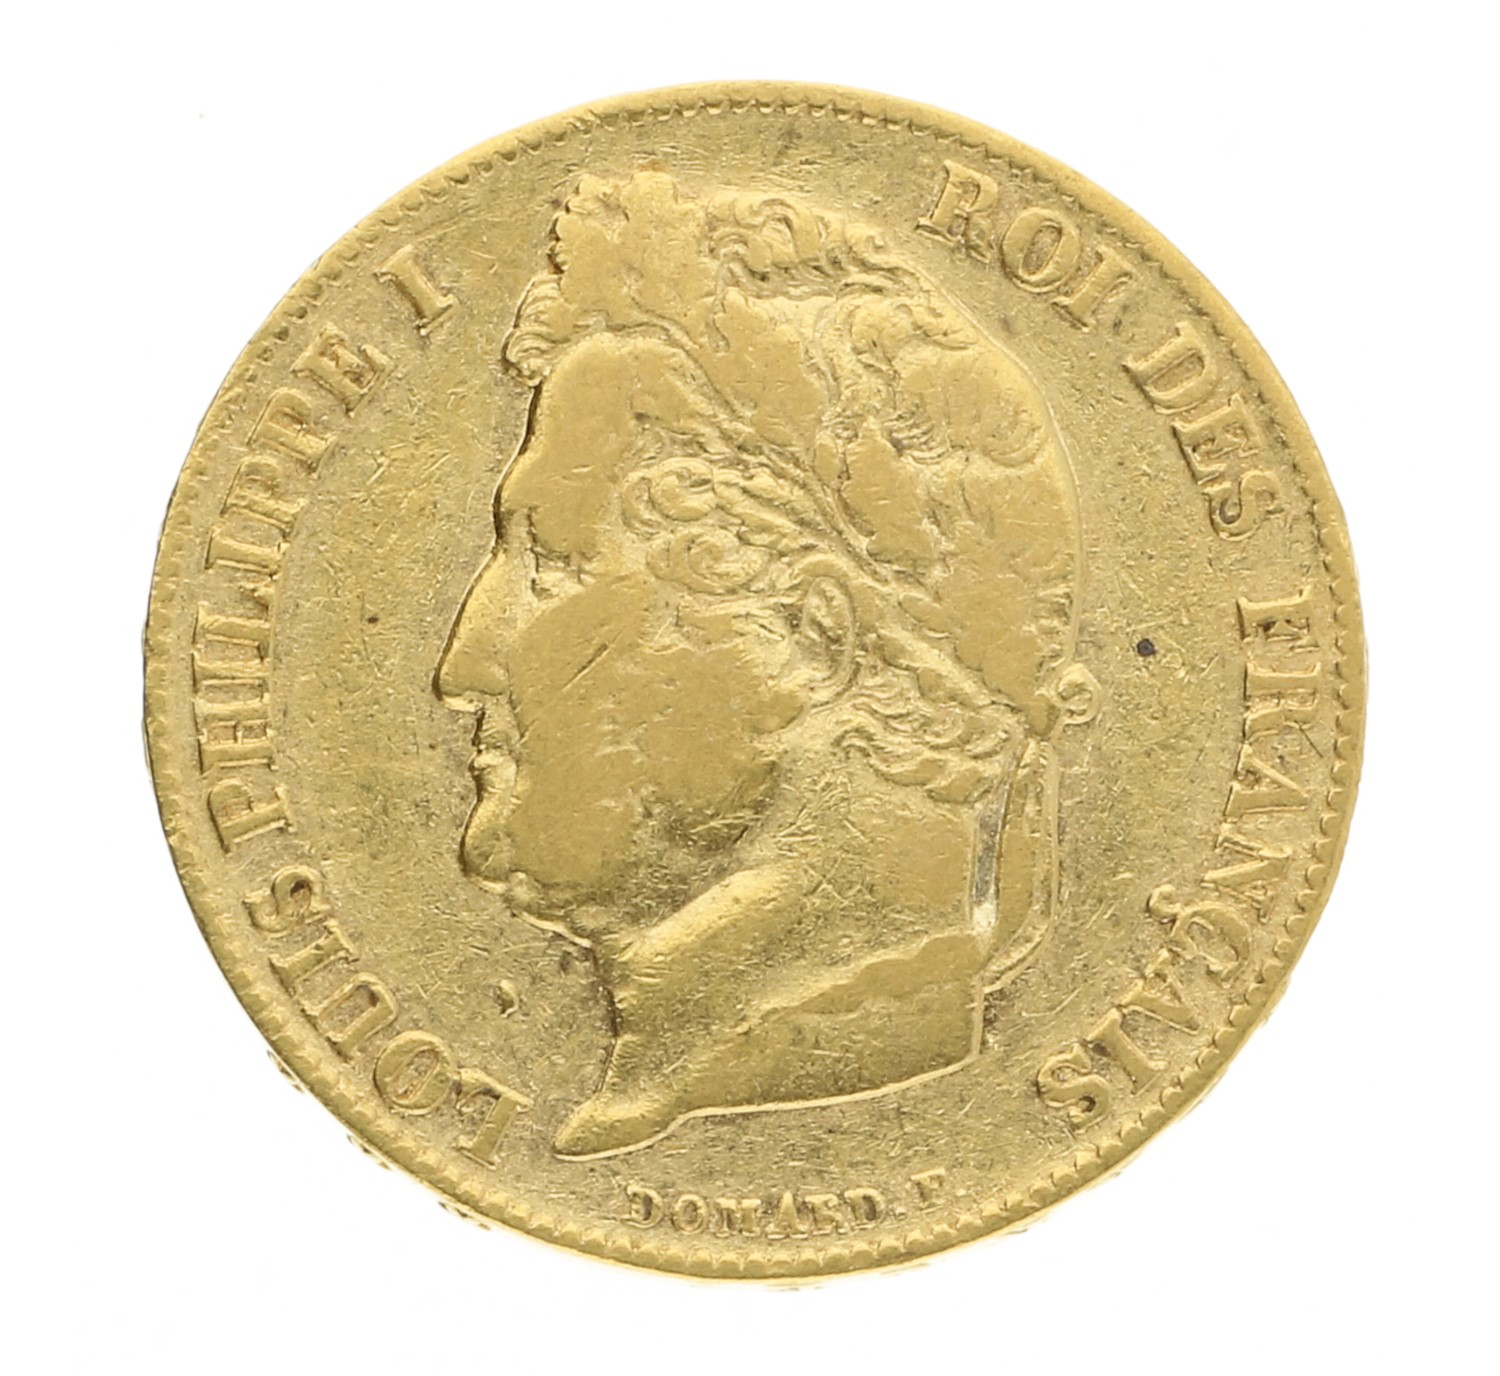 20 Francs - France - 1840